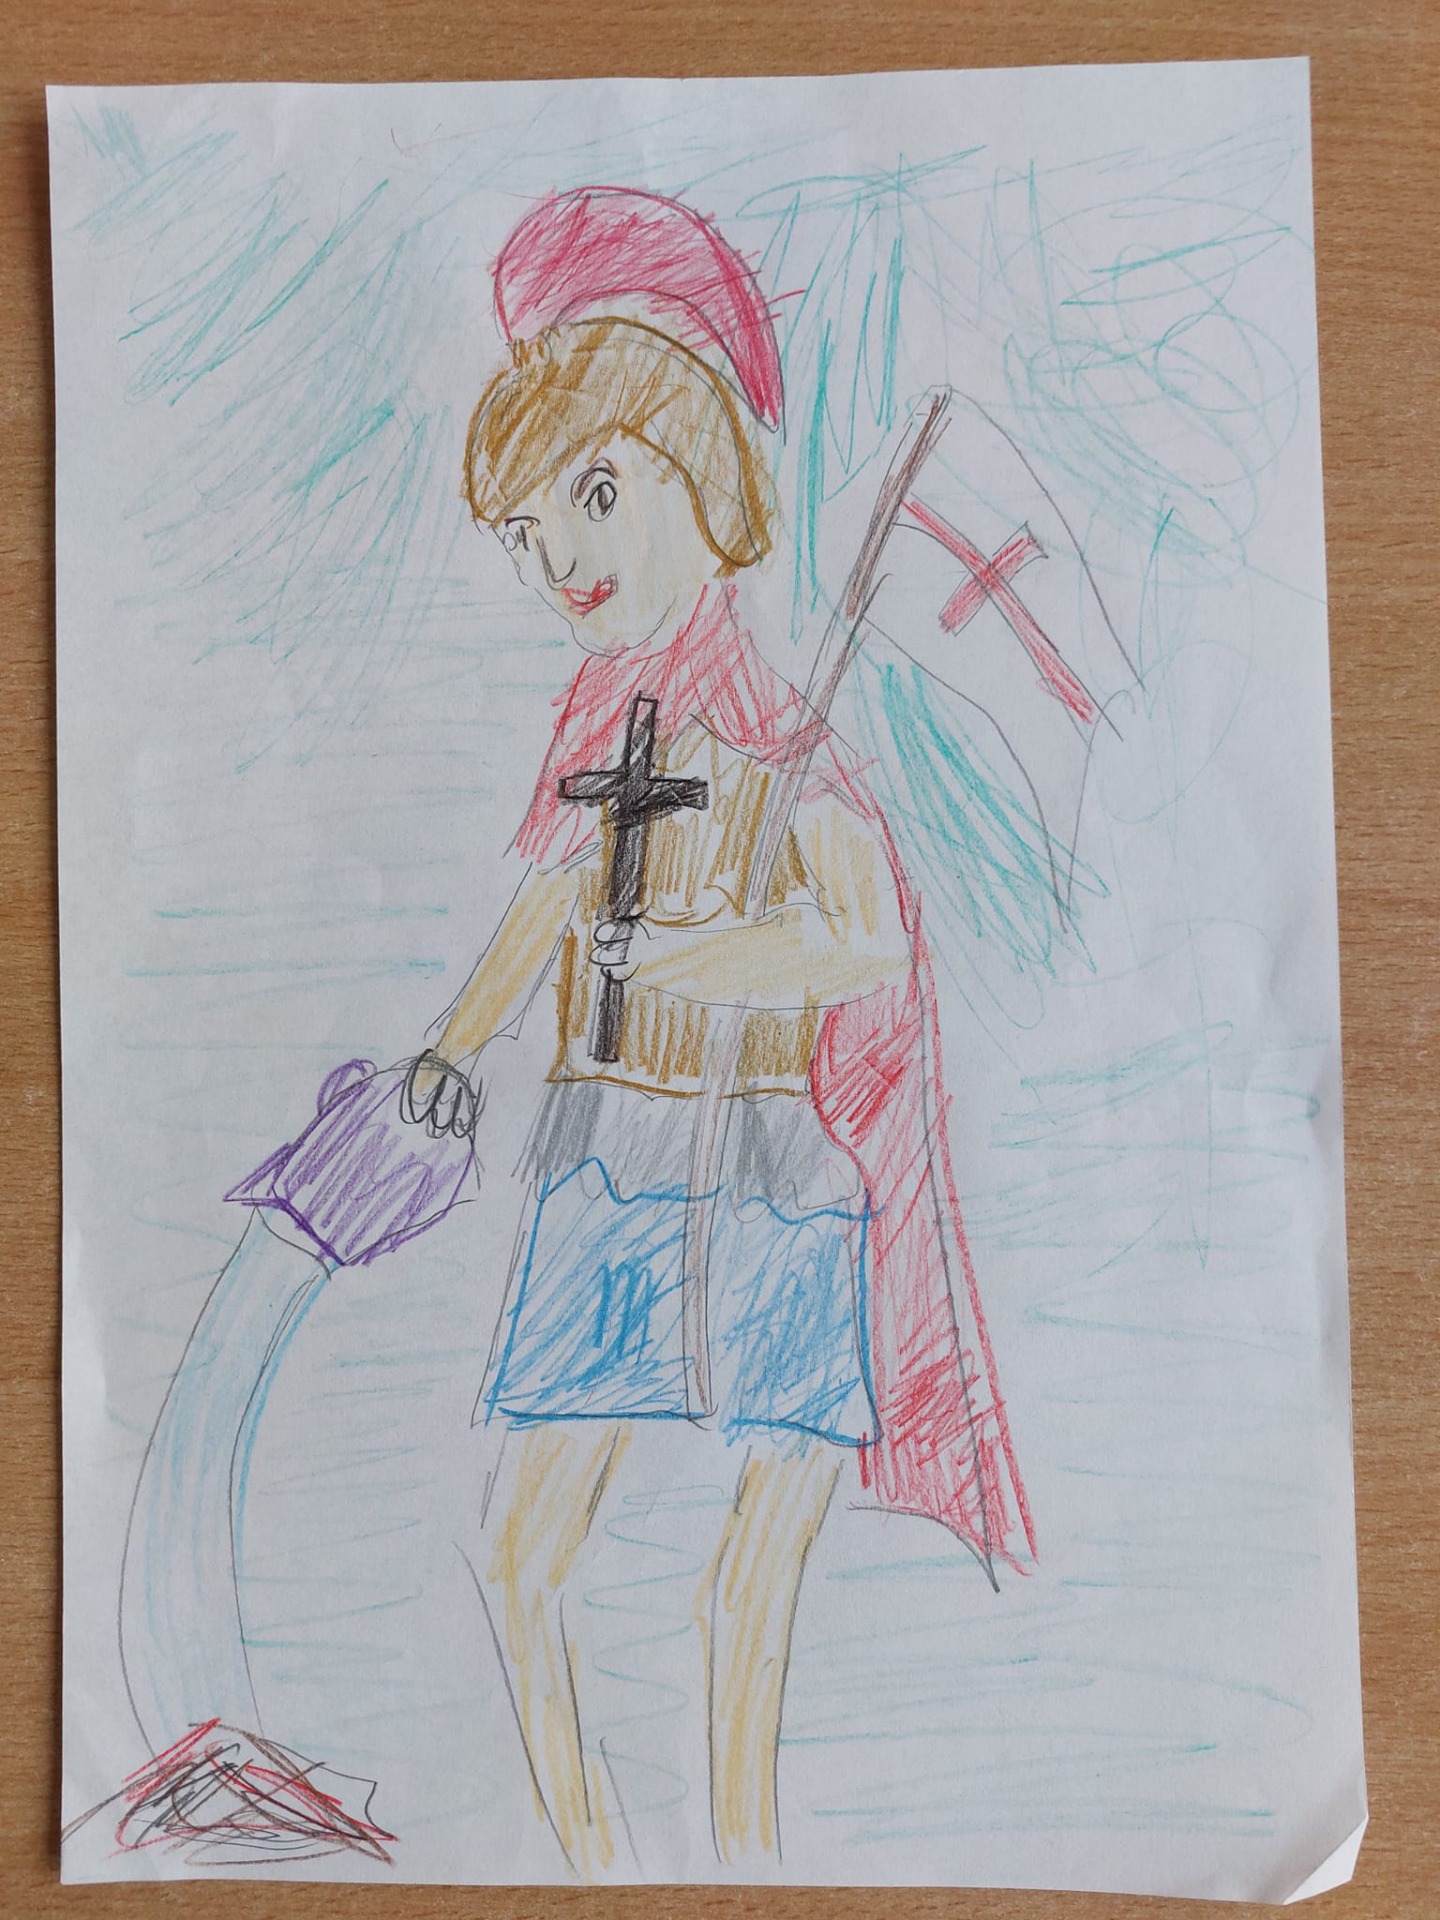 Obrazek namalowany przez ucznia na temat "Mój ulubiony święty".